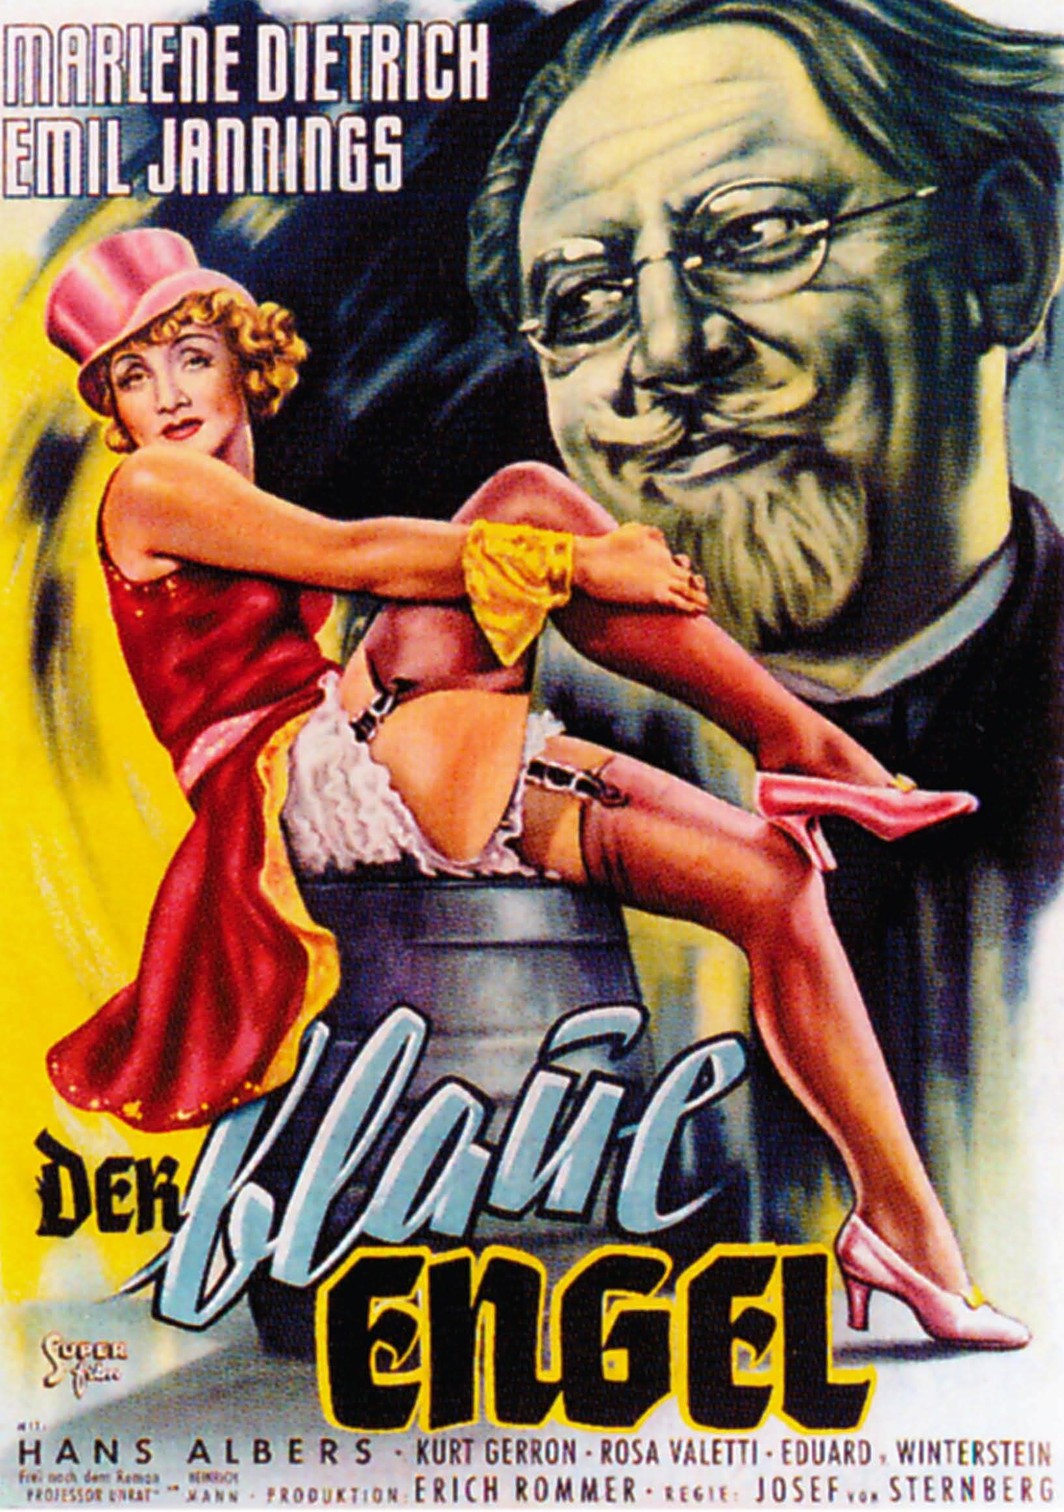 Poster for Der Blaue Engel (The Blue Angel), directed by Josef von Sternberg, 1930.